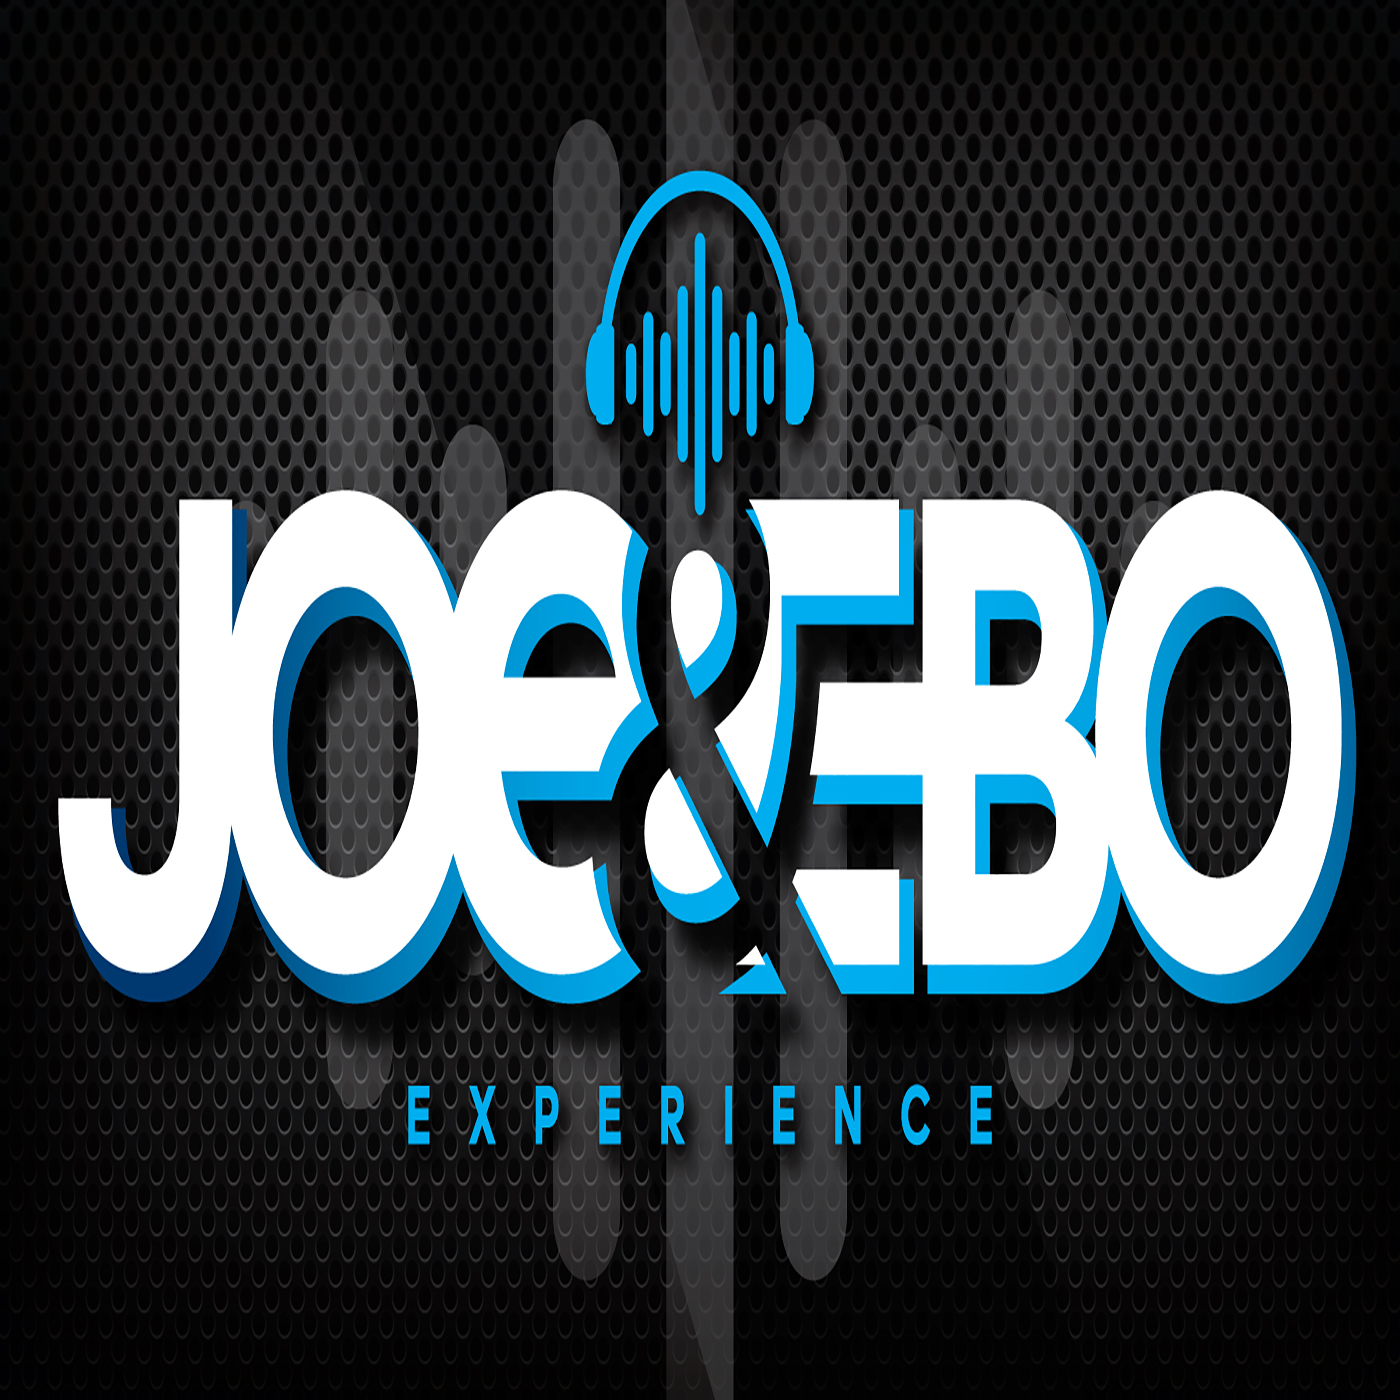 Joe & Ebo Experience: Wisconsin's All-Time Defense